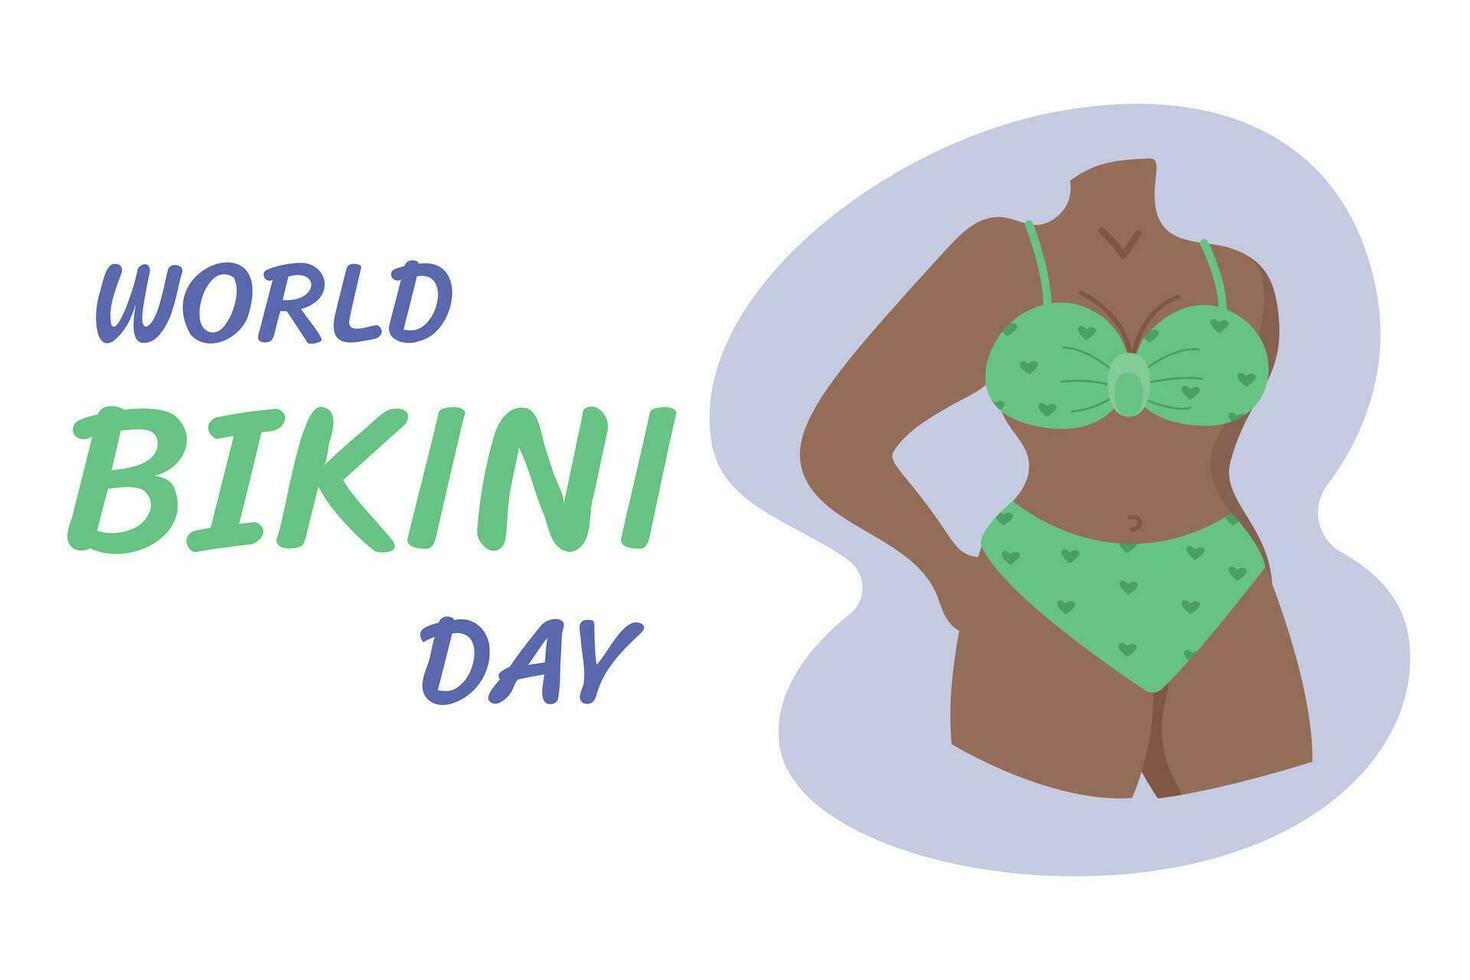 mundo bikini día. vector ilustración de un mujer en bikini.